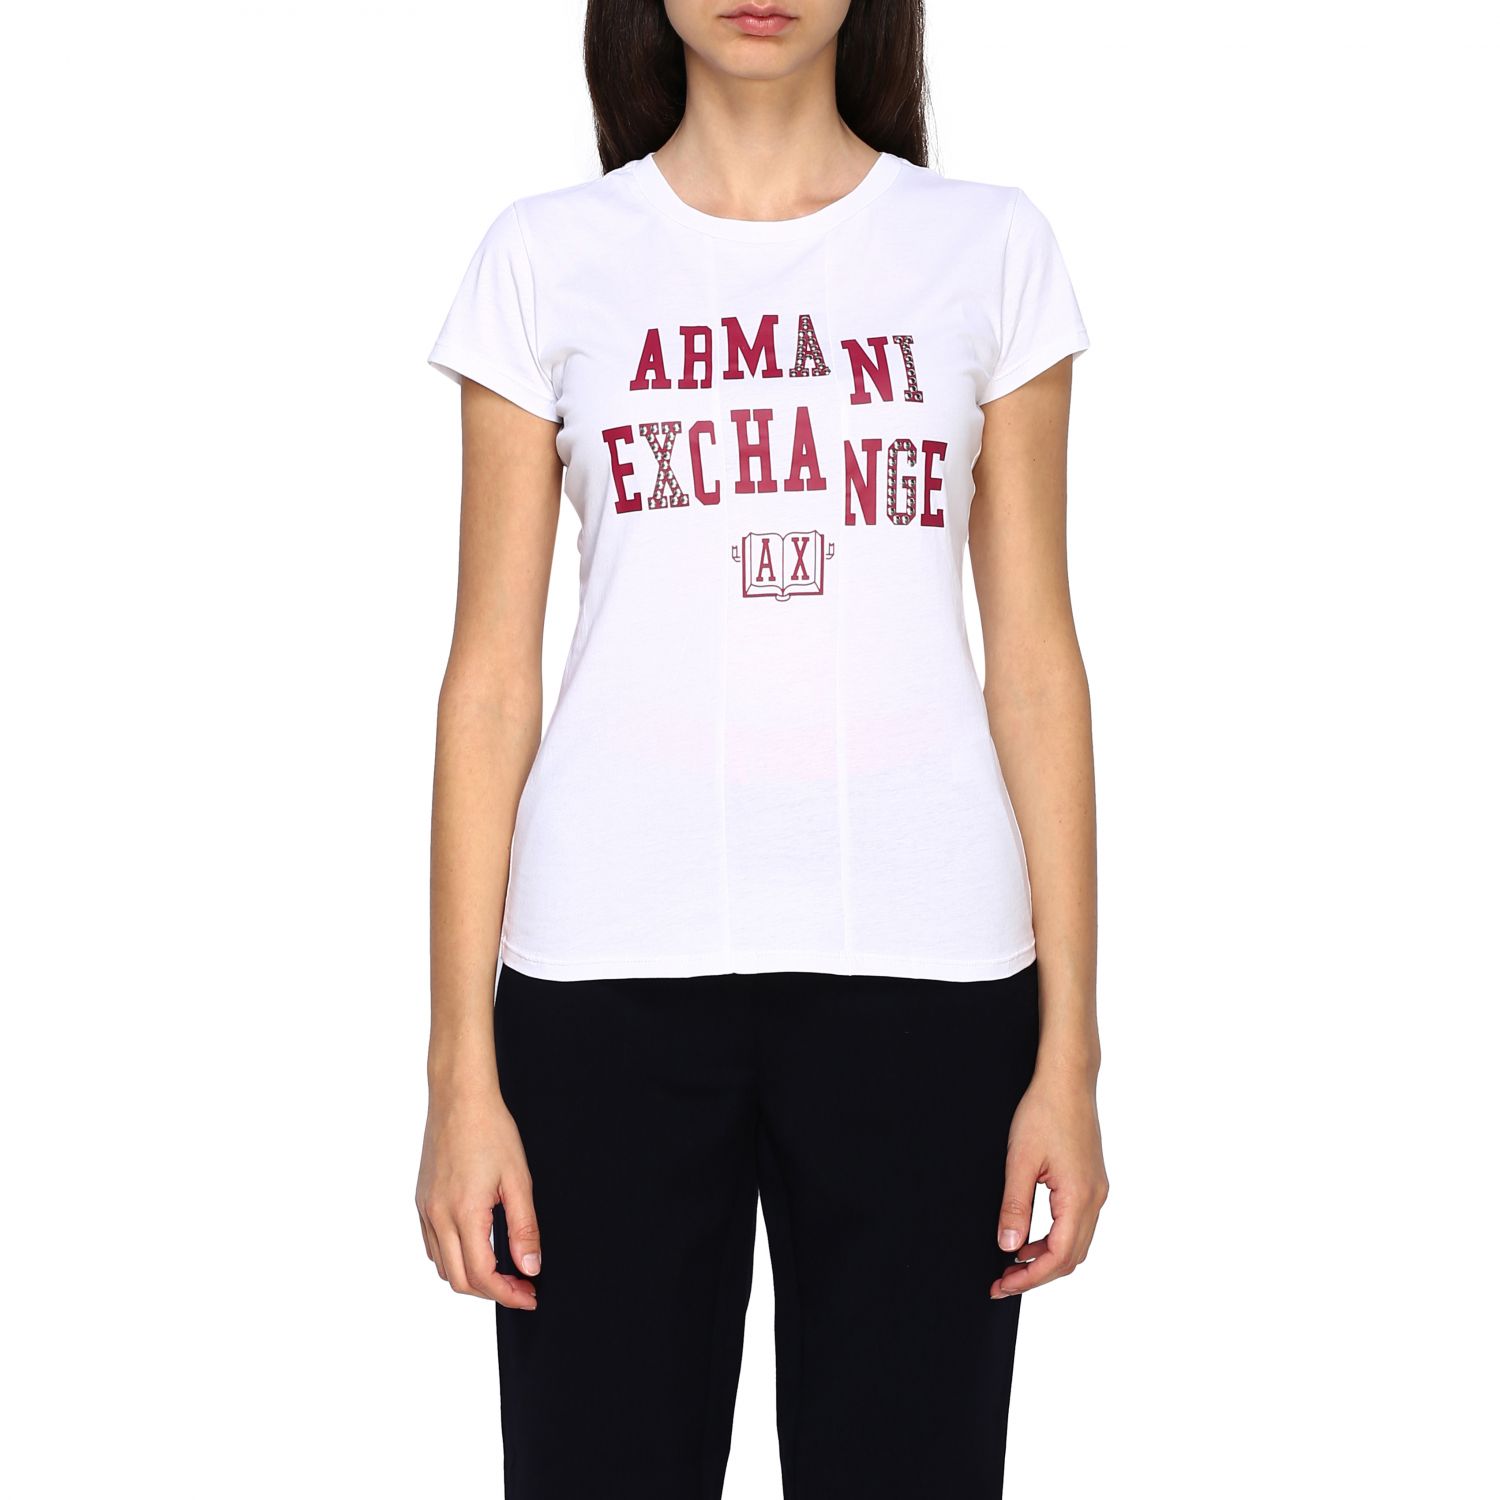 armani exchange tshirt women